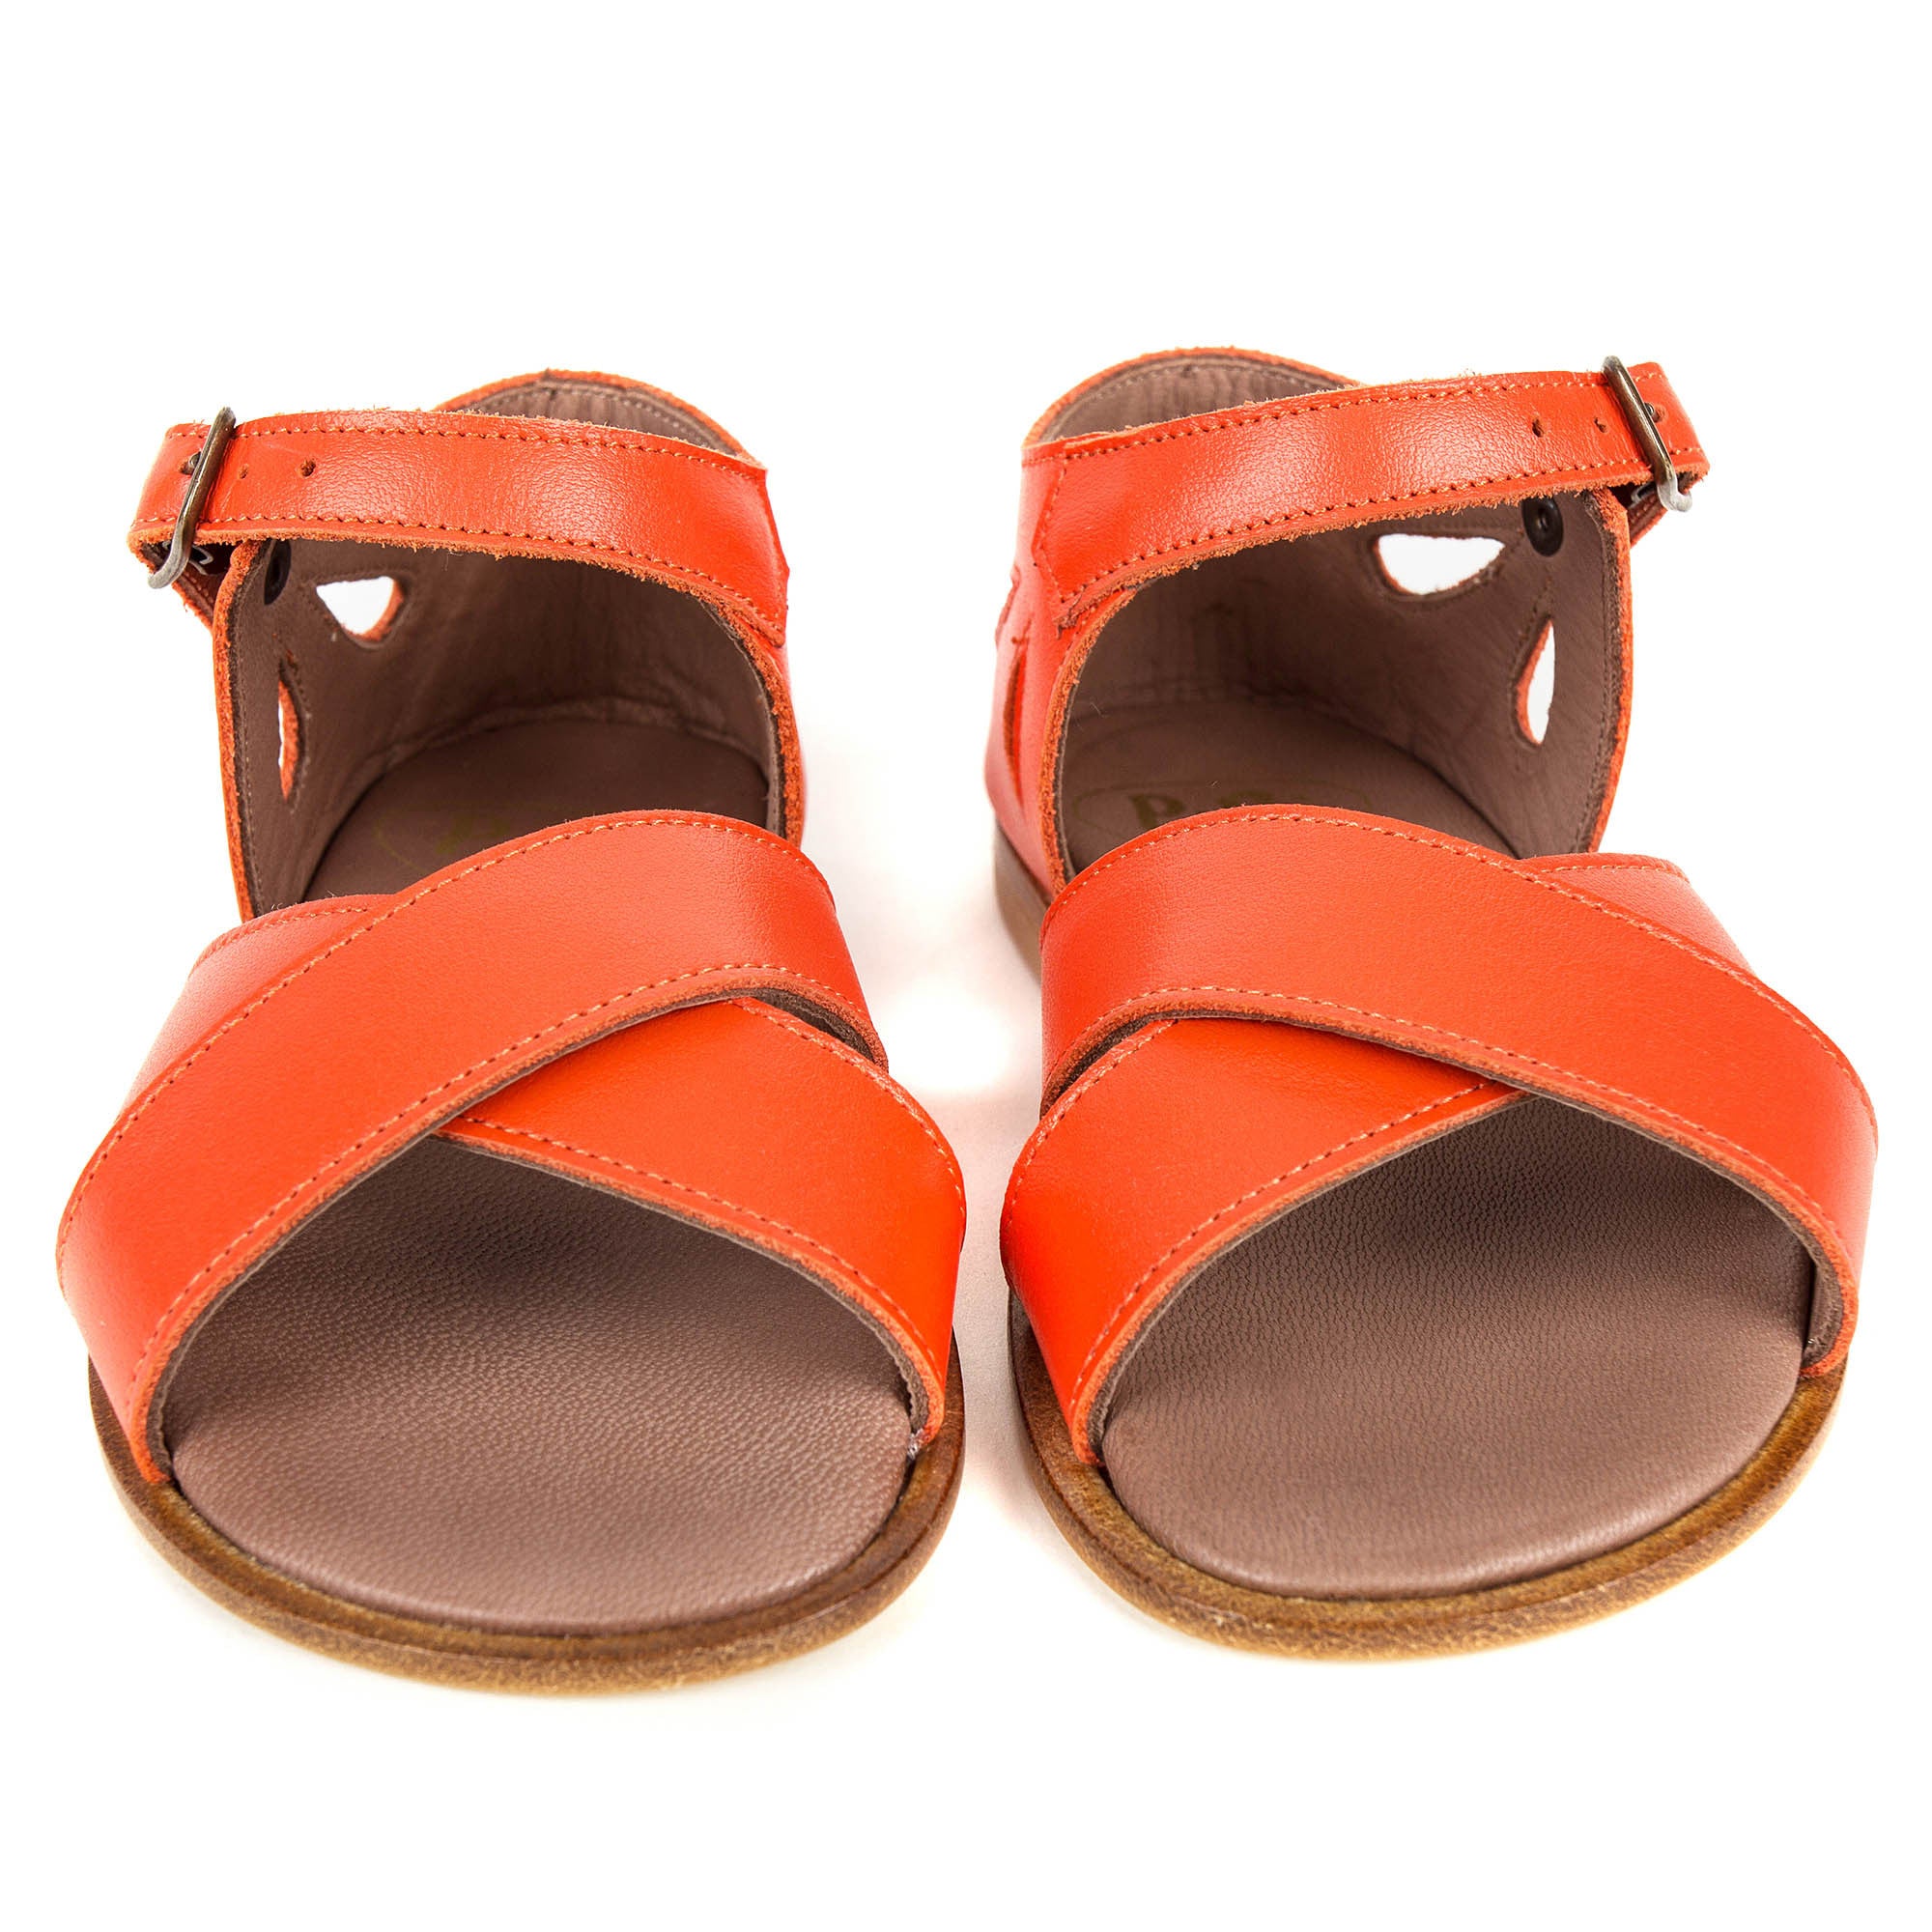 Girls Orange Cowskin Leather Sandals